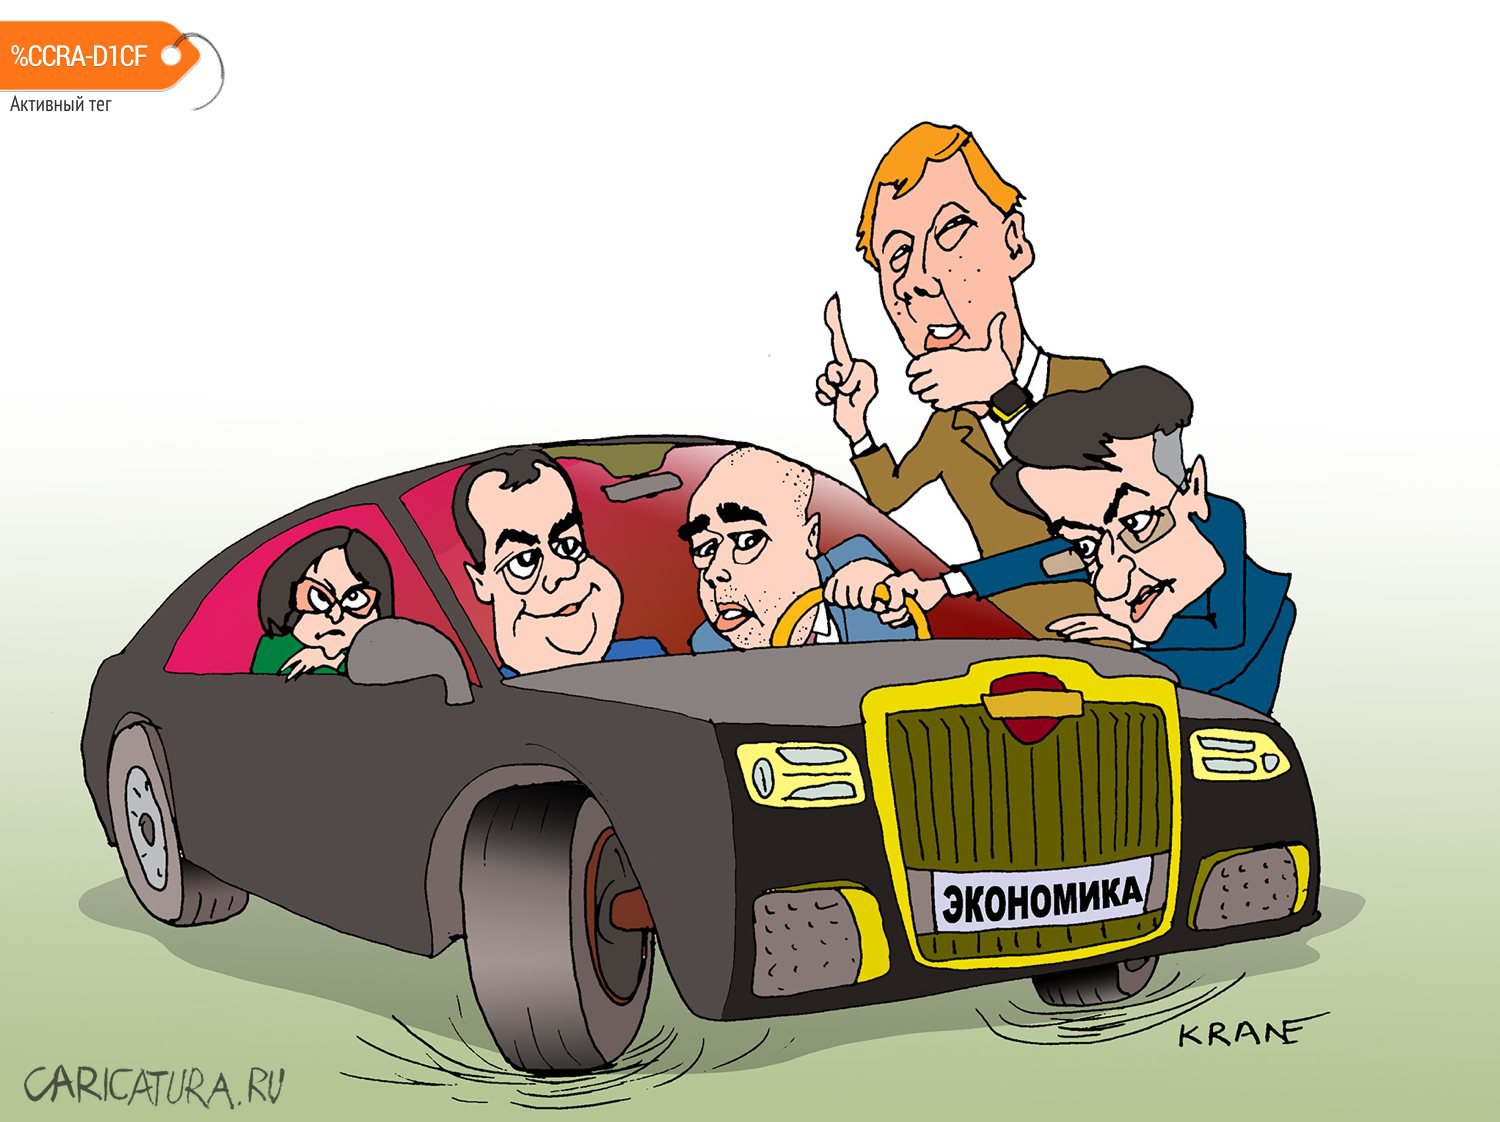 Карикатура "Экономика не едет", Евгений Кран